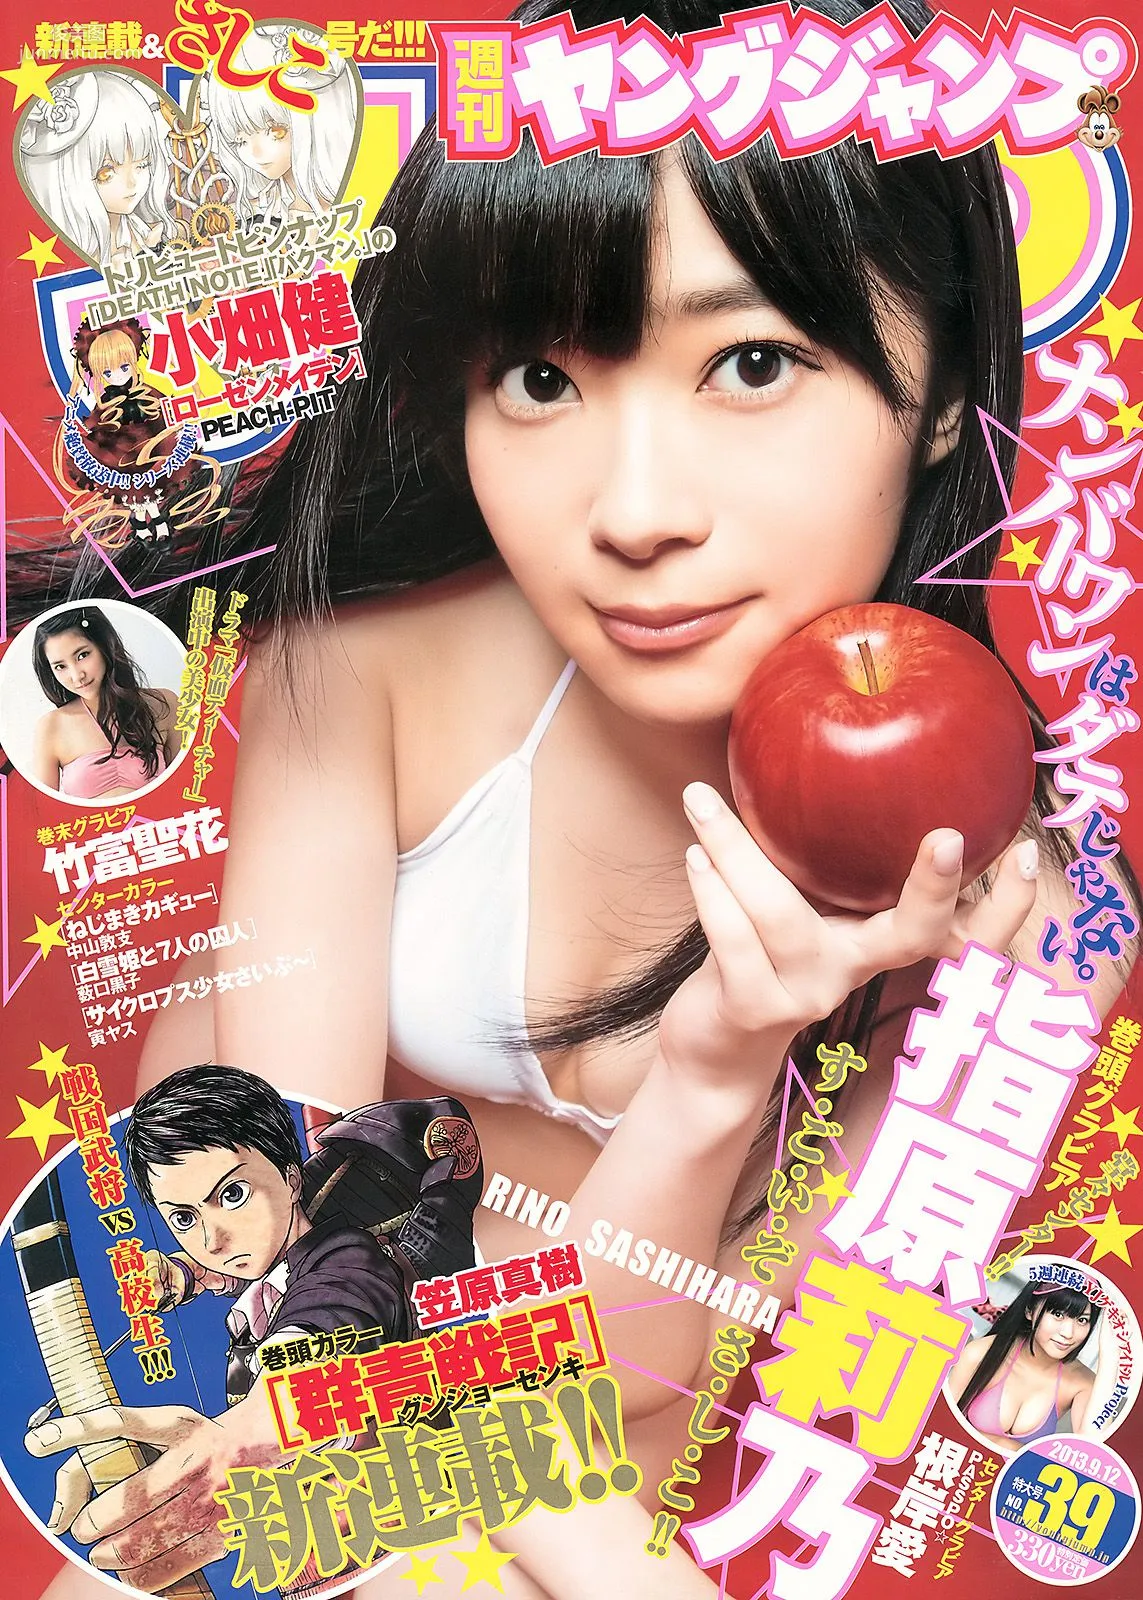 指原莉乃 根岸愛 竹富聖花 [Weekly Young Jump] 2013年No.39 写真杂志1